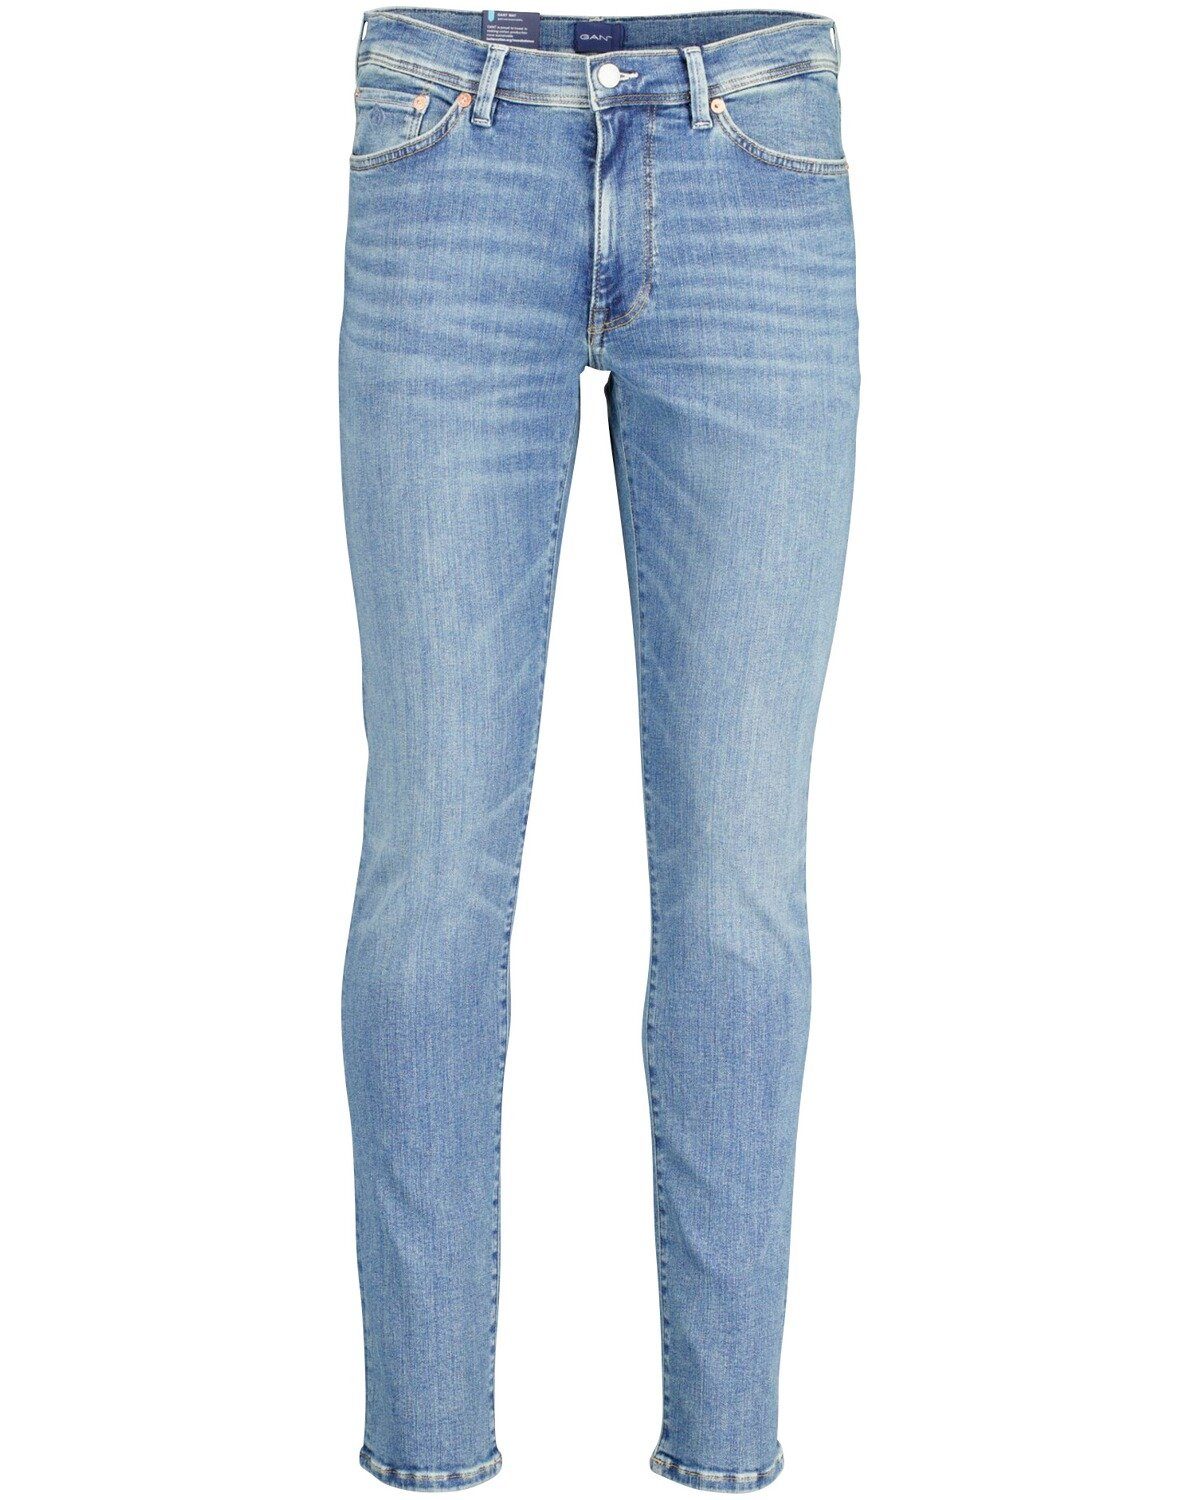 Gant Herren Jeans online kaufen | OTTO